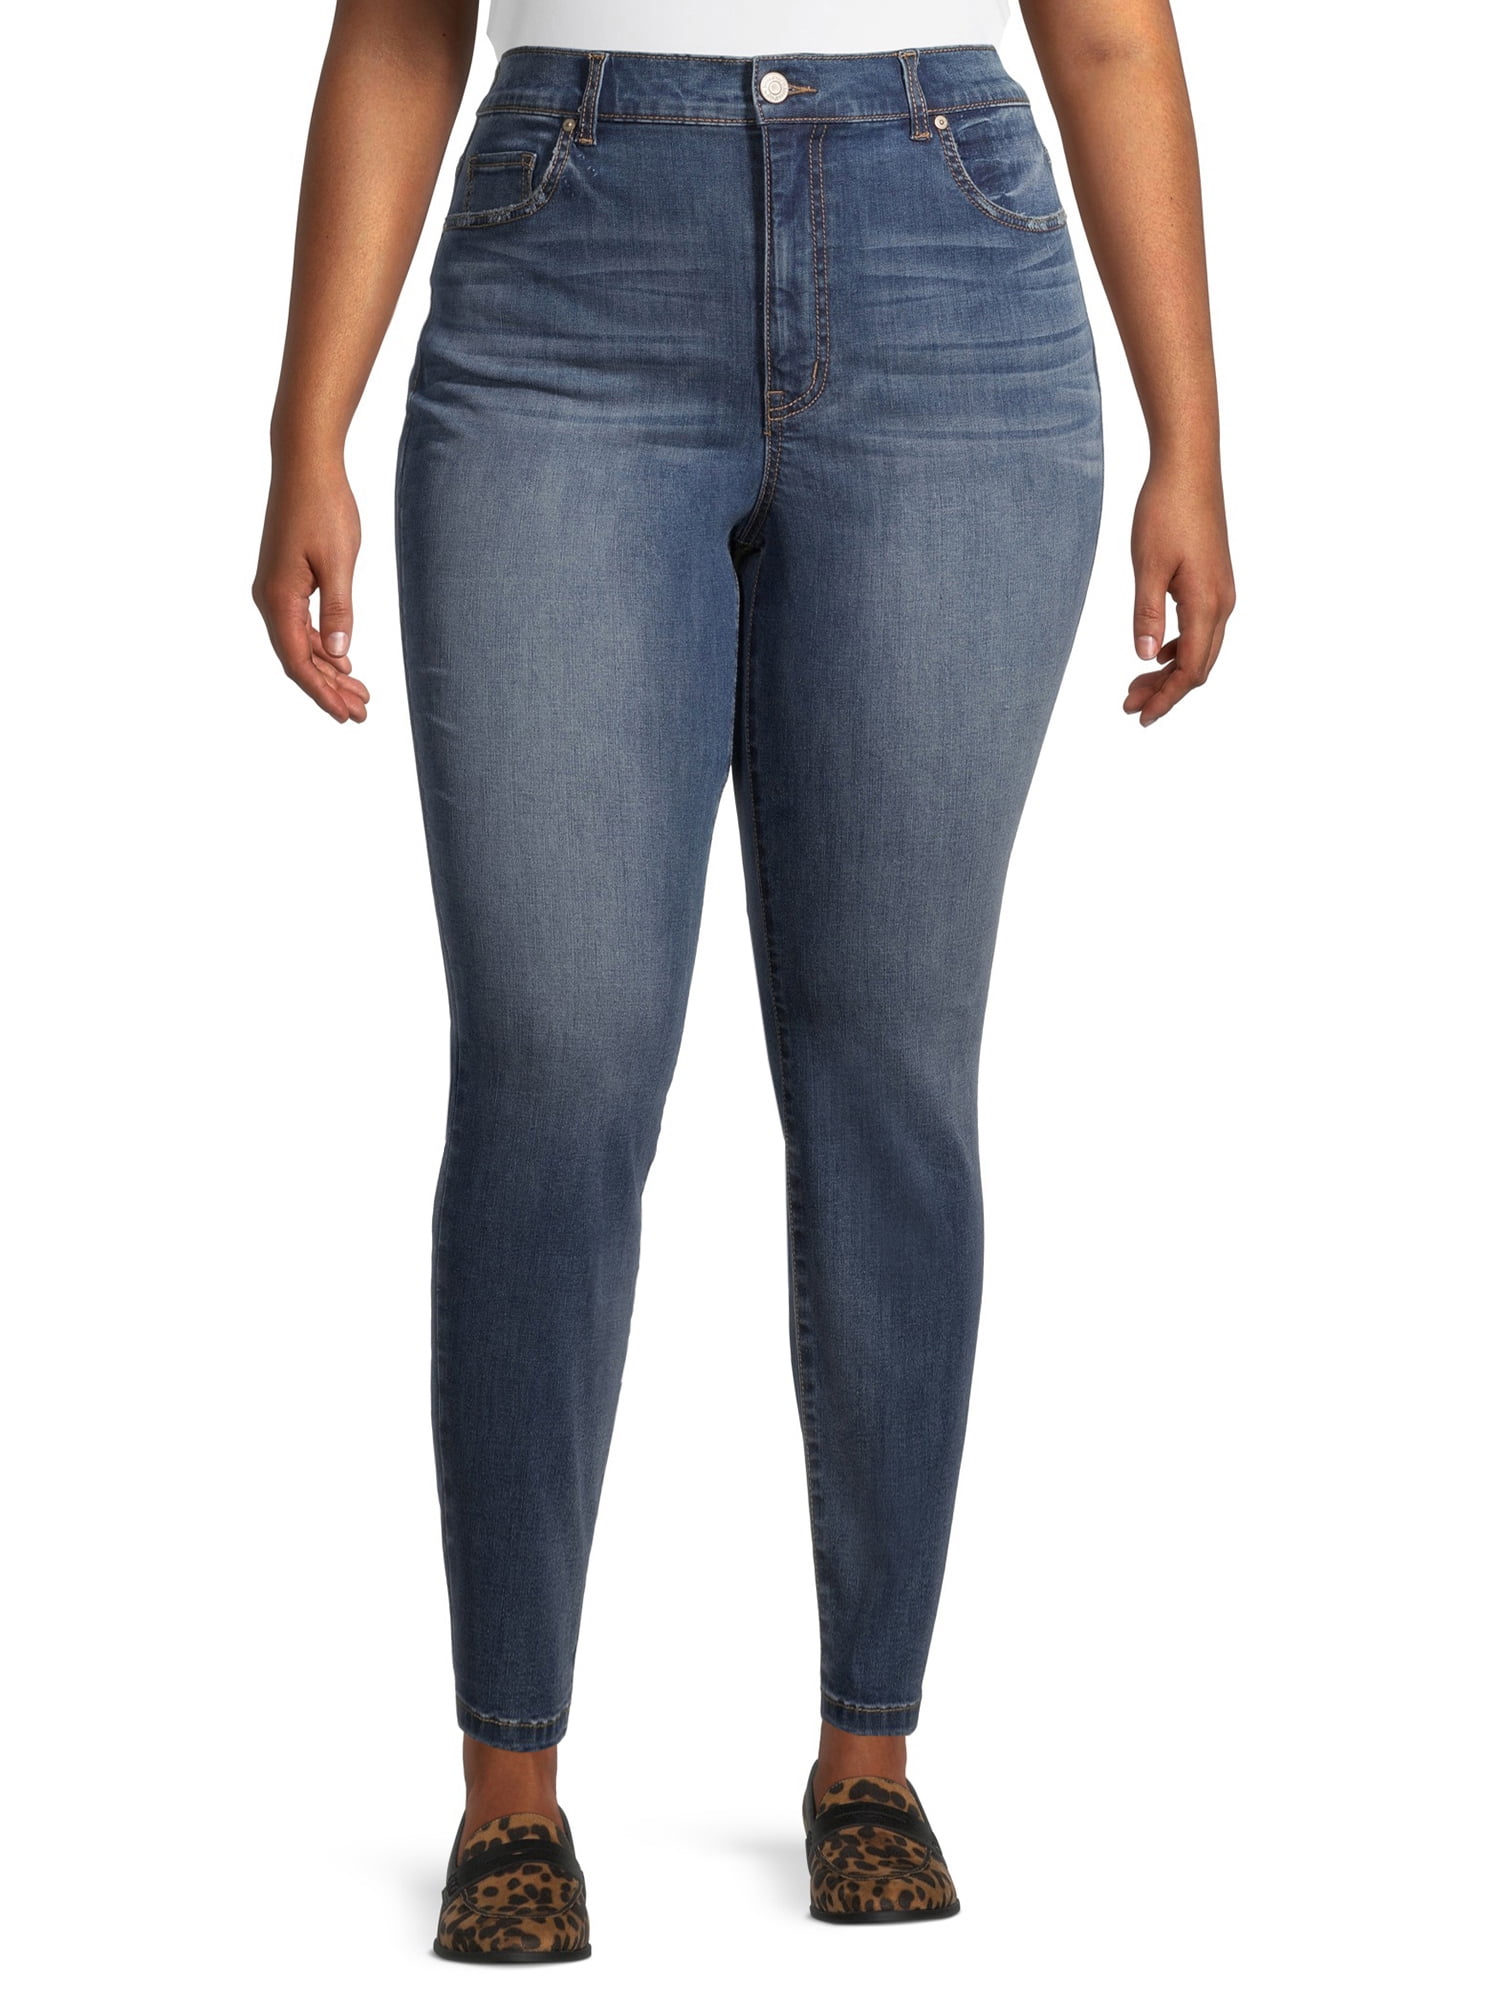 Terra & Sky Women's Plus Size Skinny Jeans 